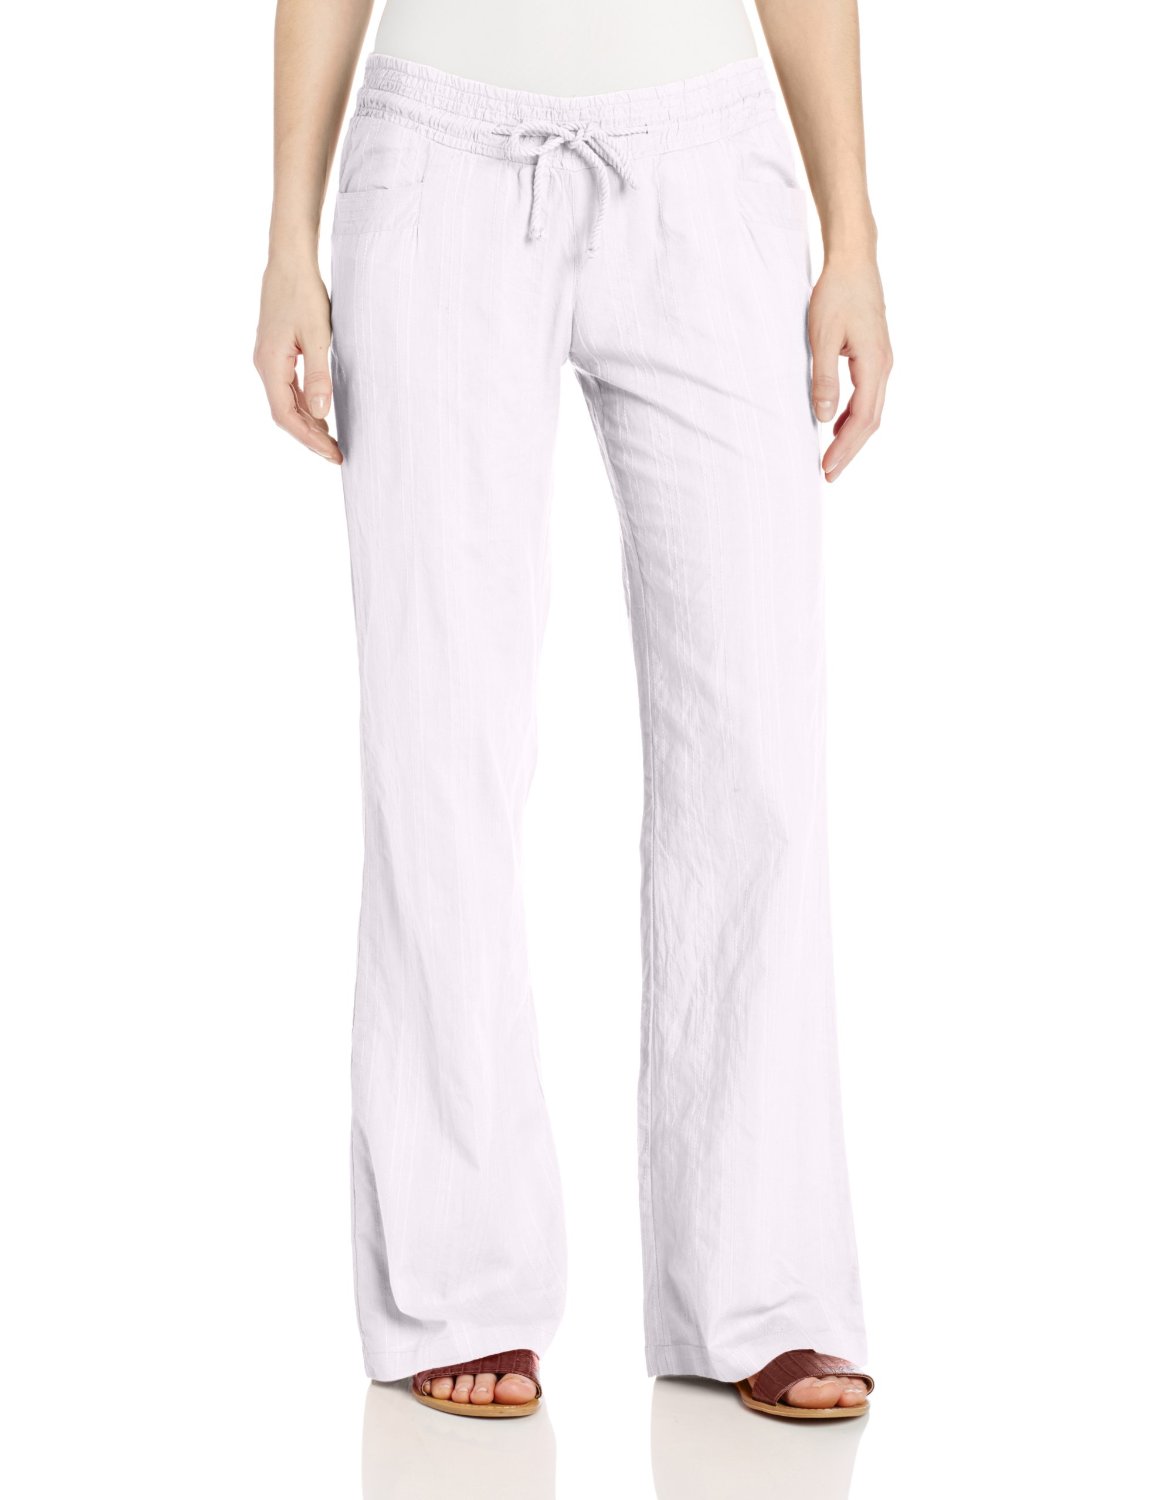 white pants for women hnduclt